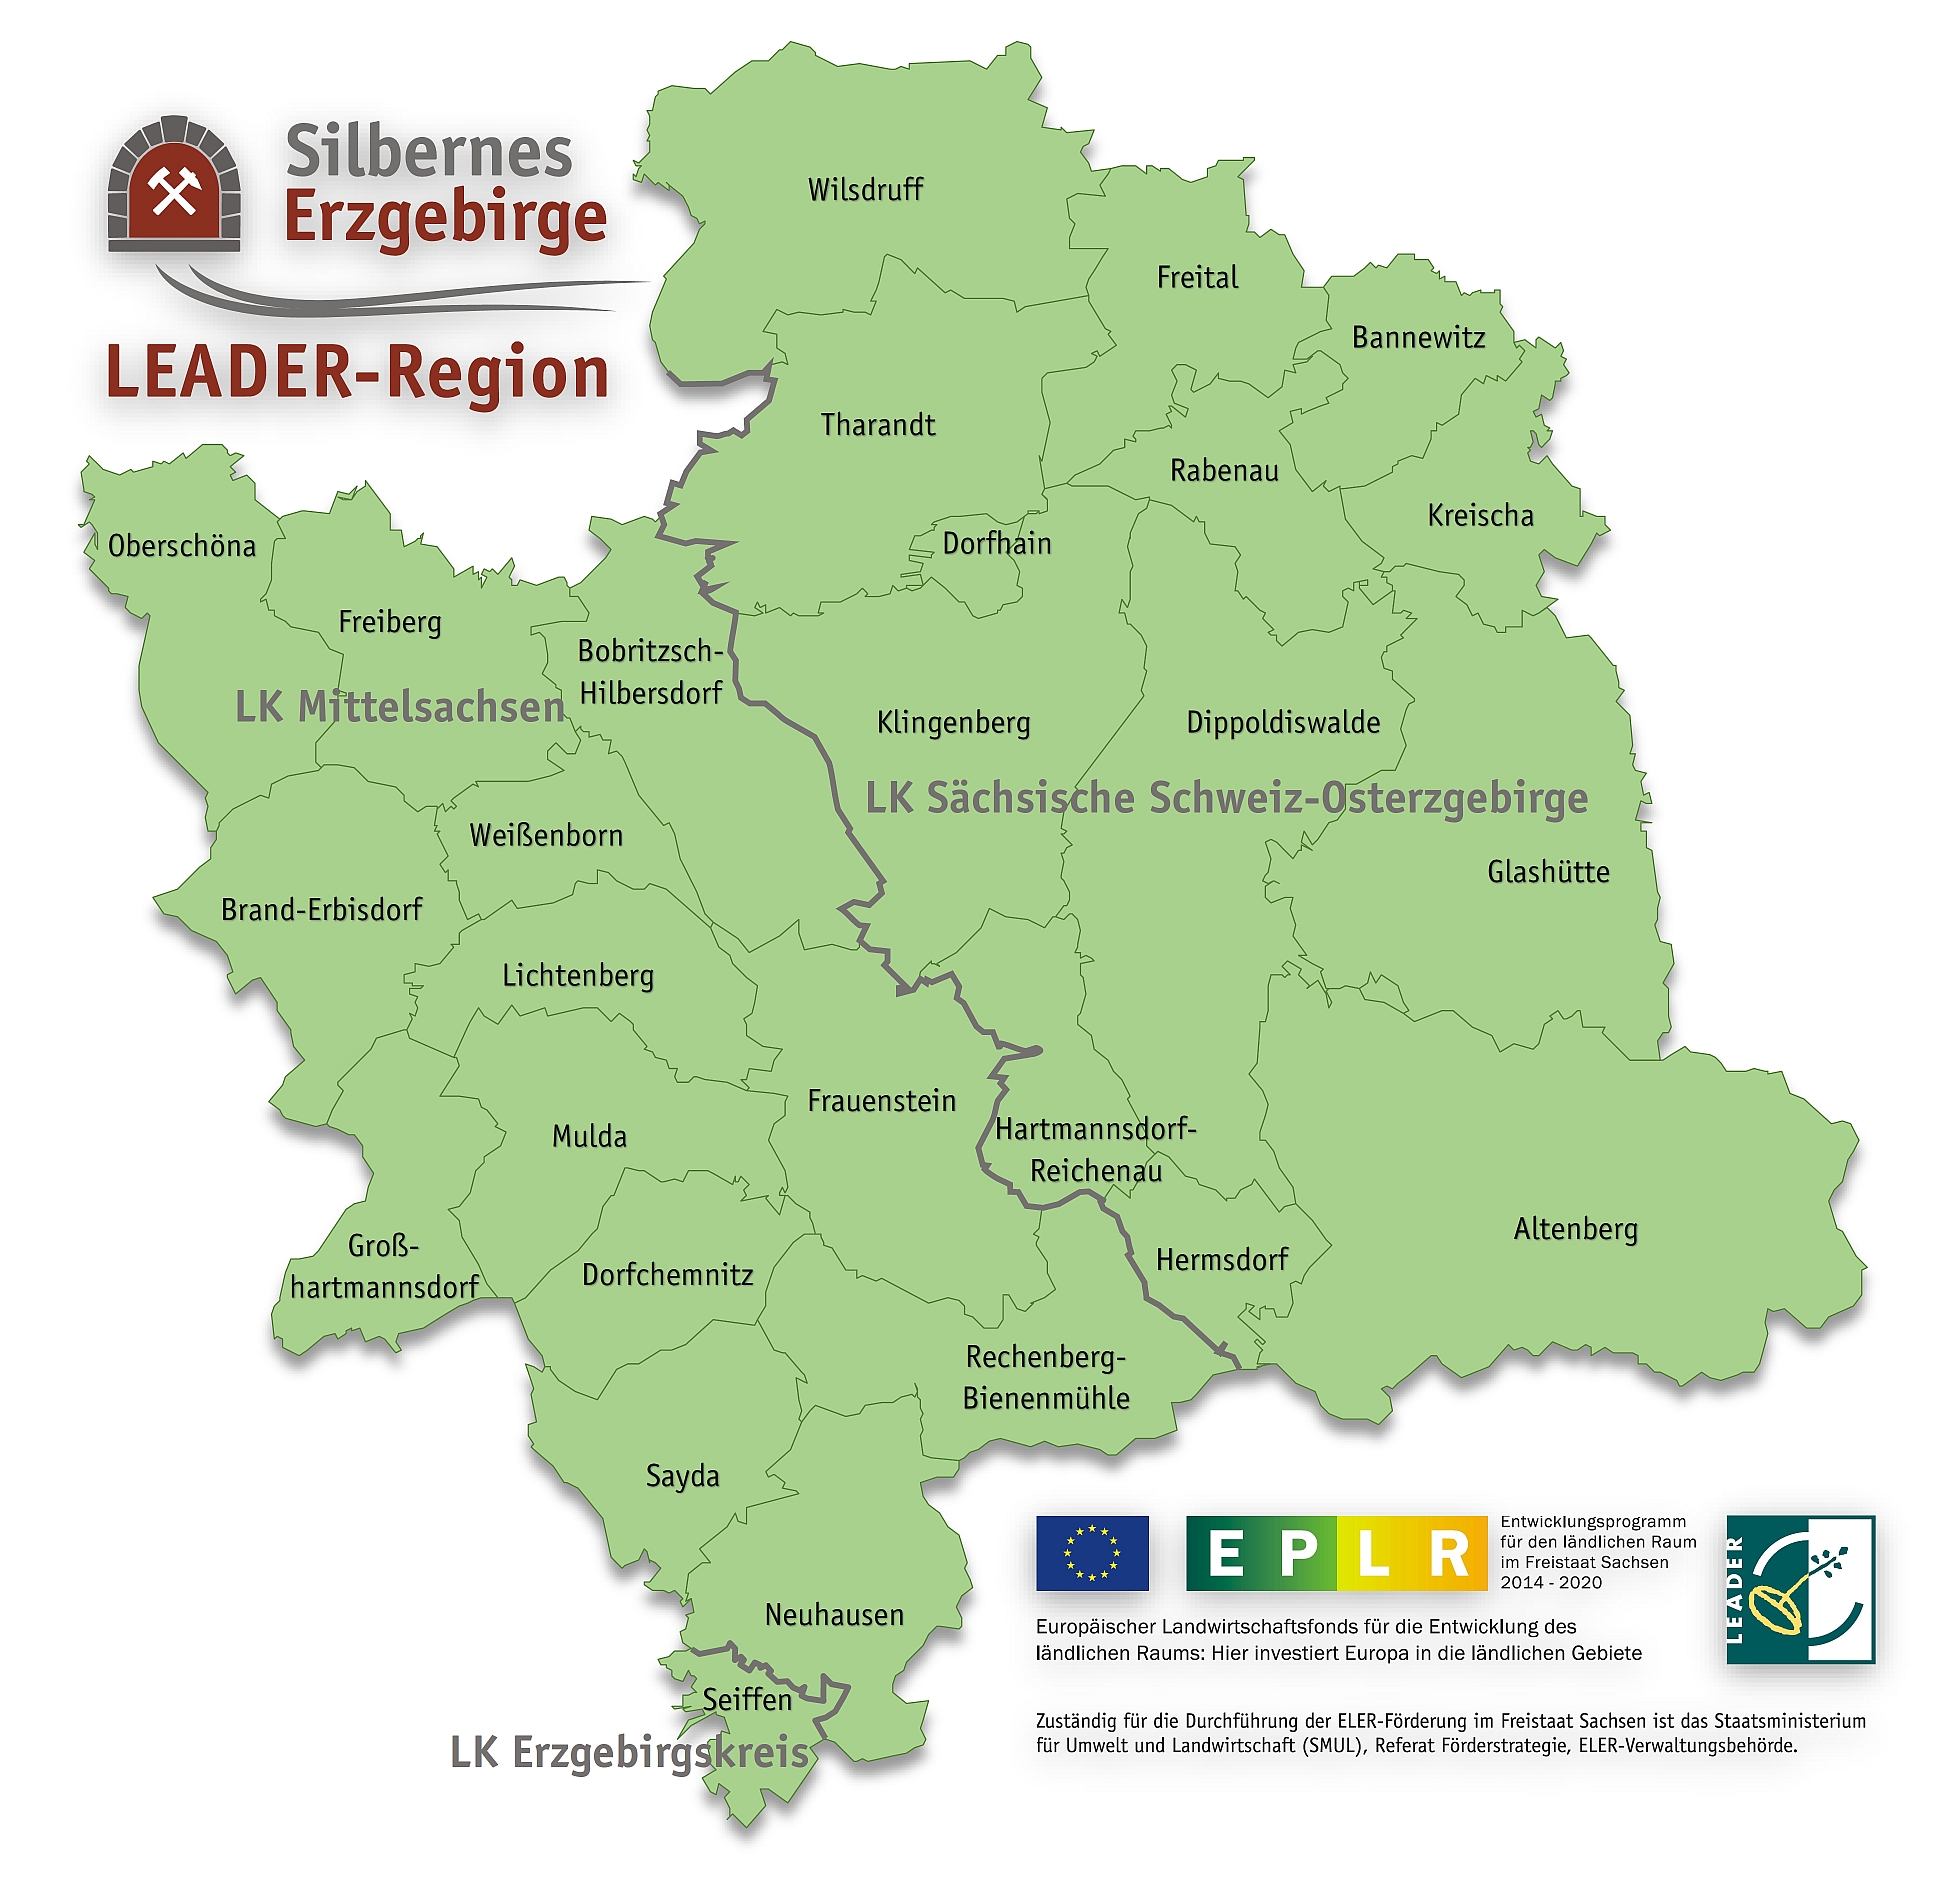 LEADER-Region Silbernes Erzgebirge